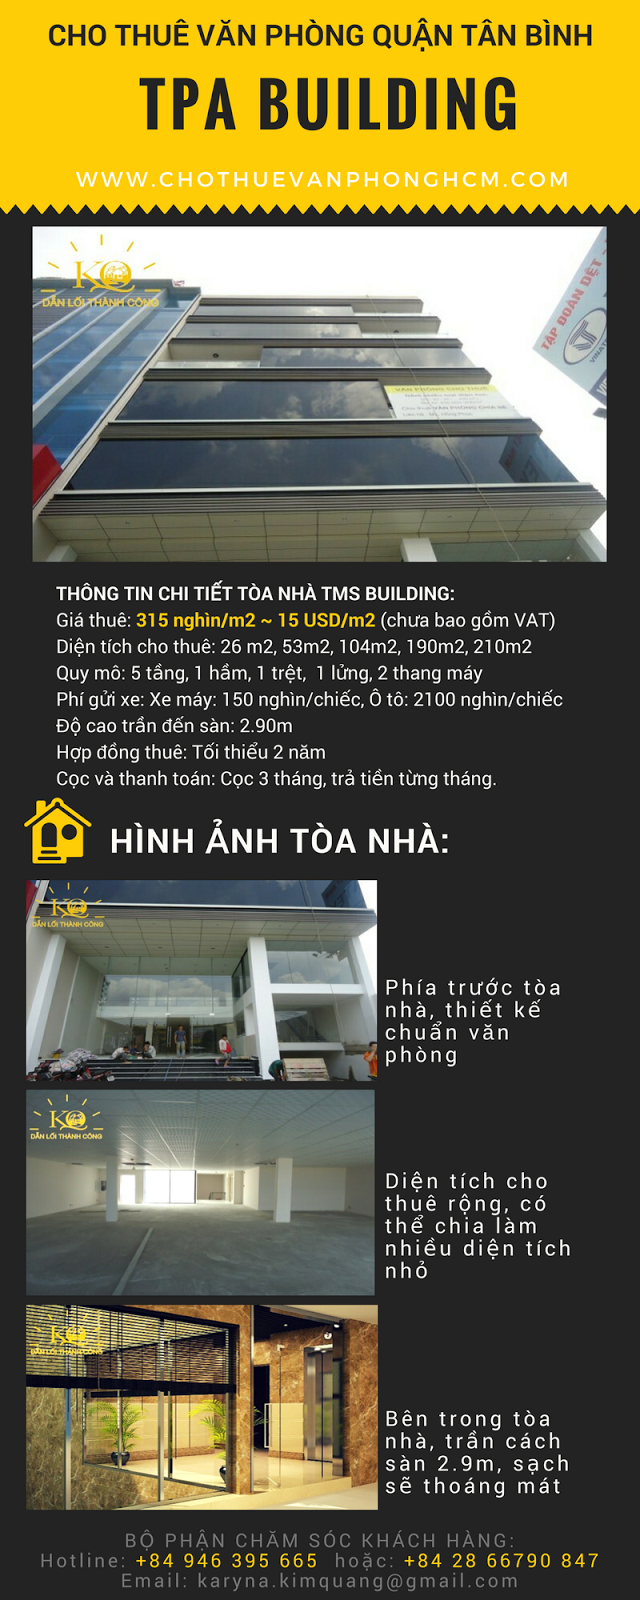 Cho thuê văn phòng quận Tân Bình TPA building